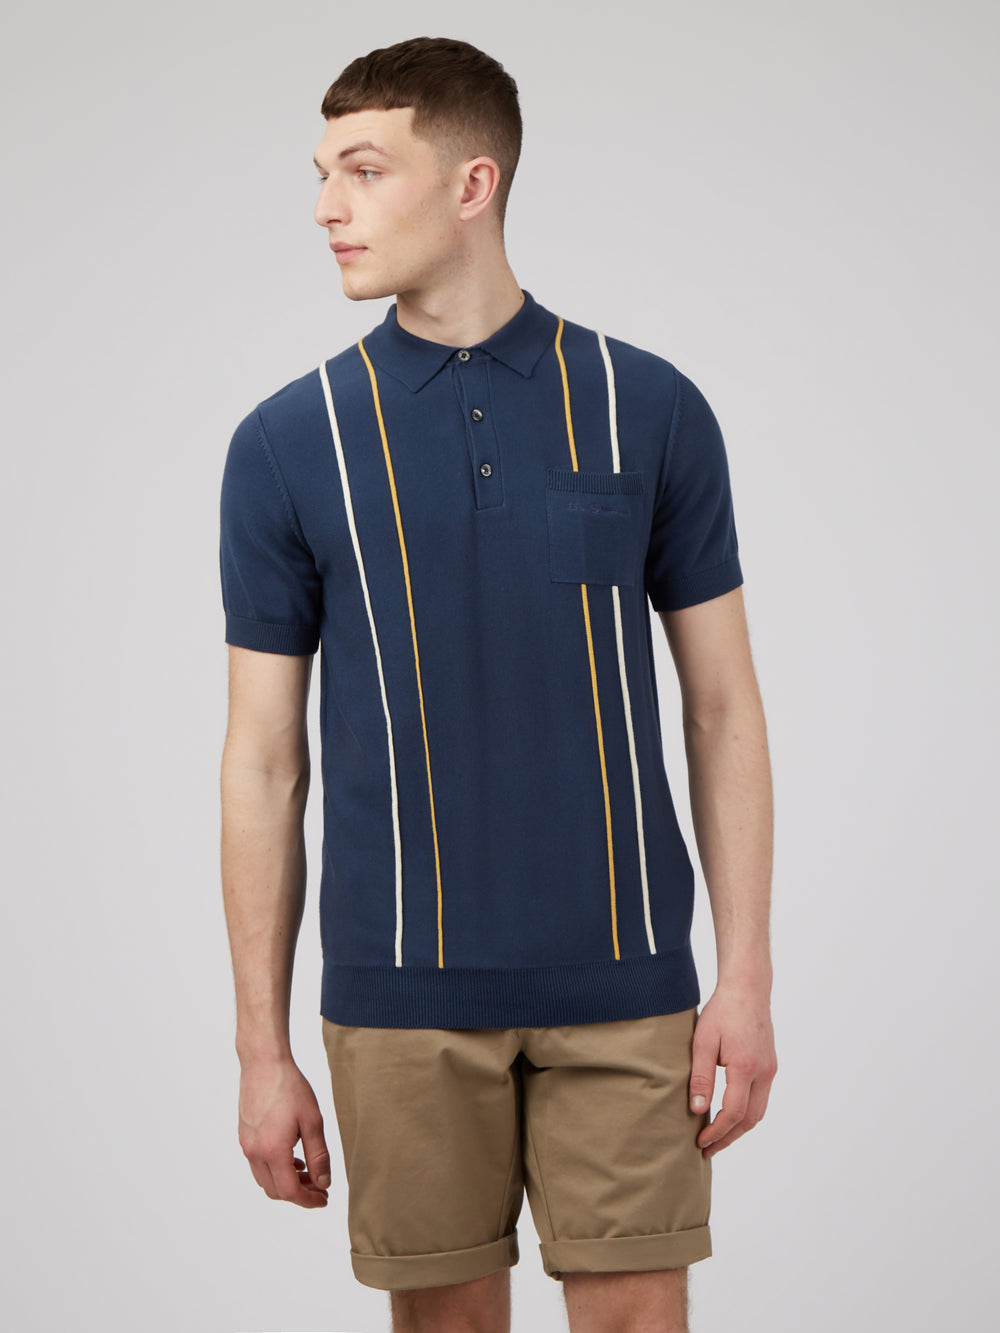 Minimal Mod Knit Striped Polo - Blue Denim - Ben Sherman